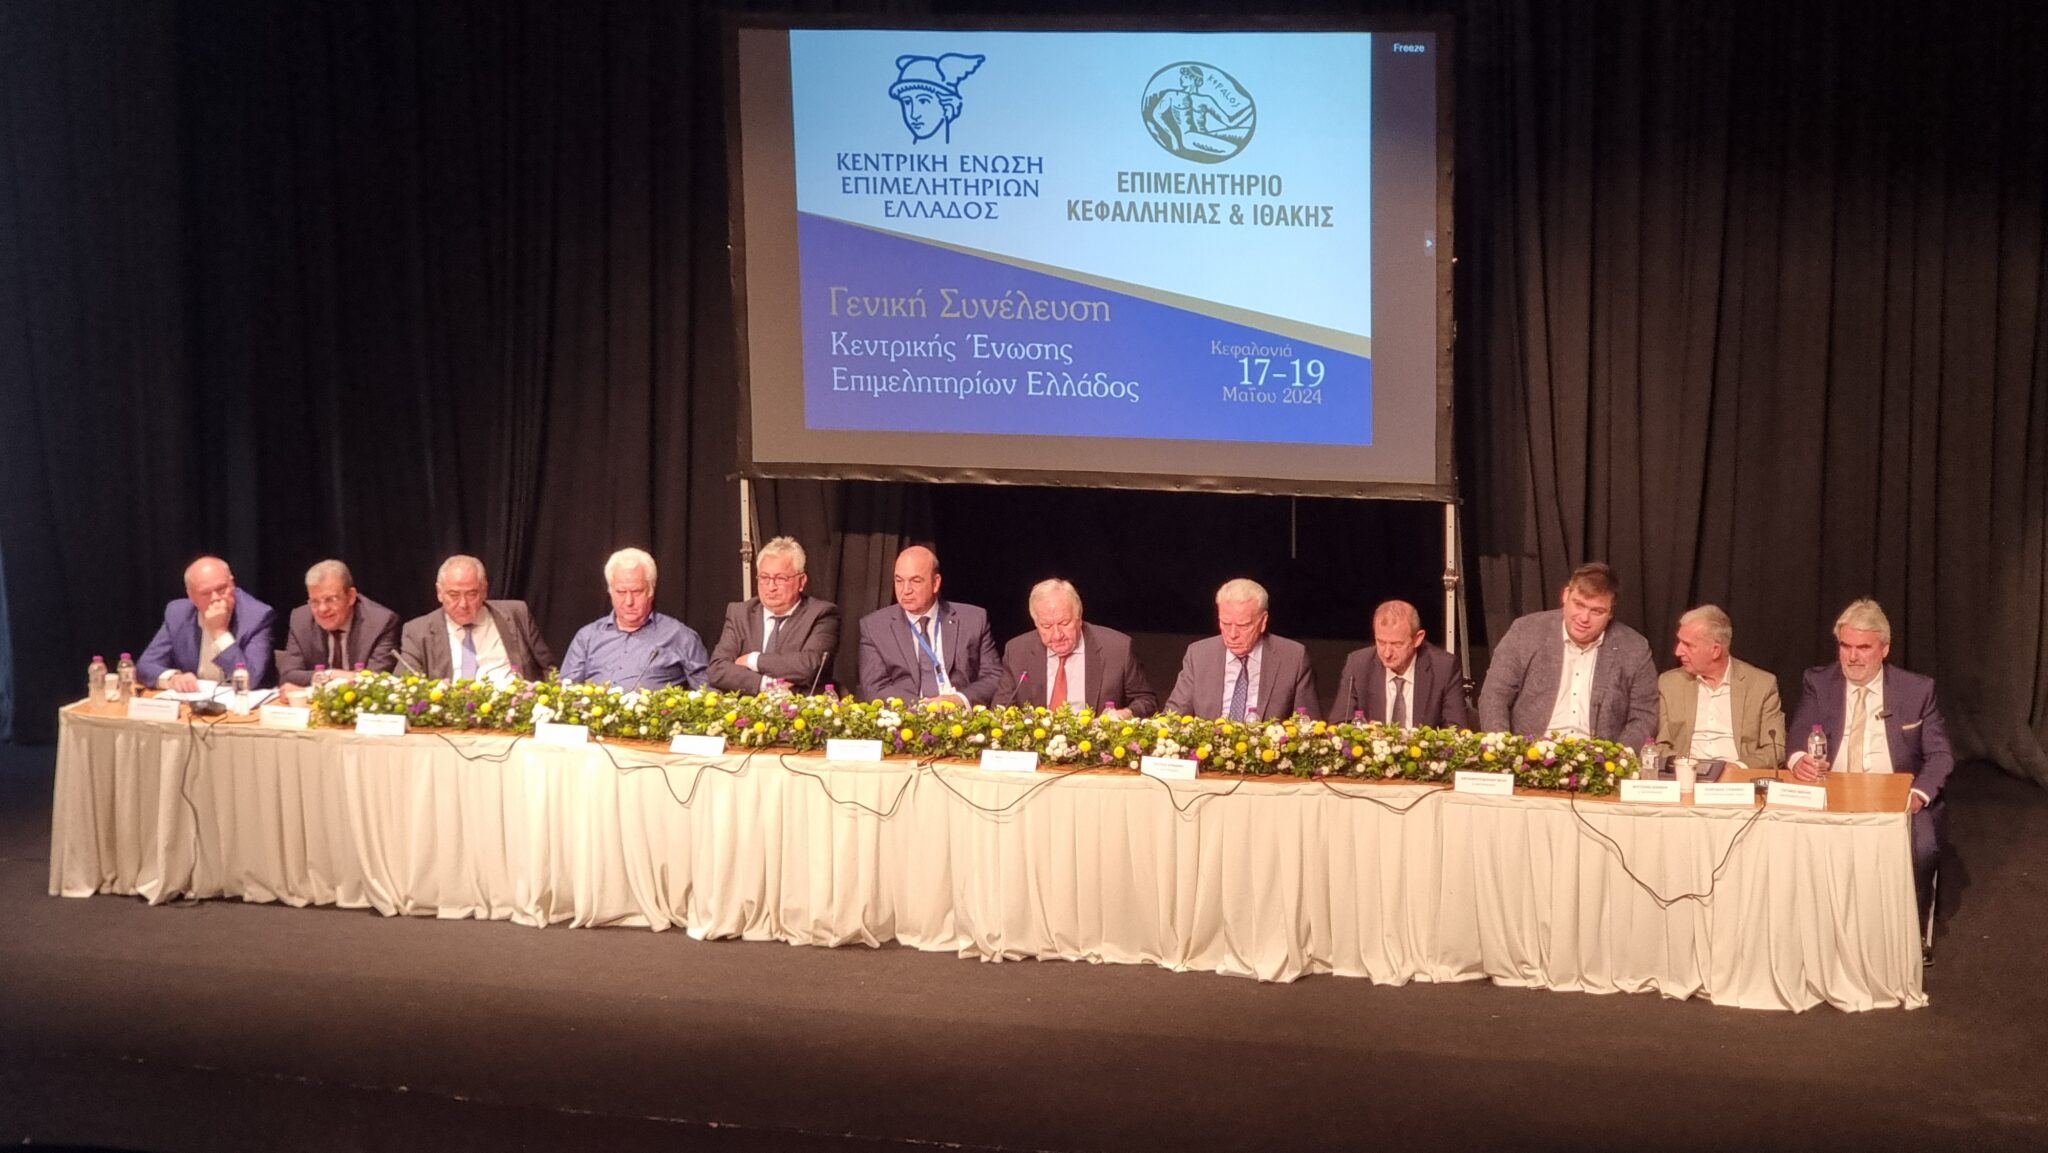 Η Κεντρική Ένωση Επιμελητηρίων Ελλάδος συνεδριάζει στην Κόρινθο